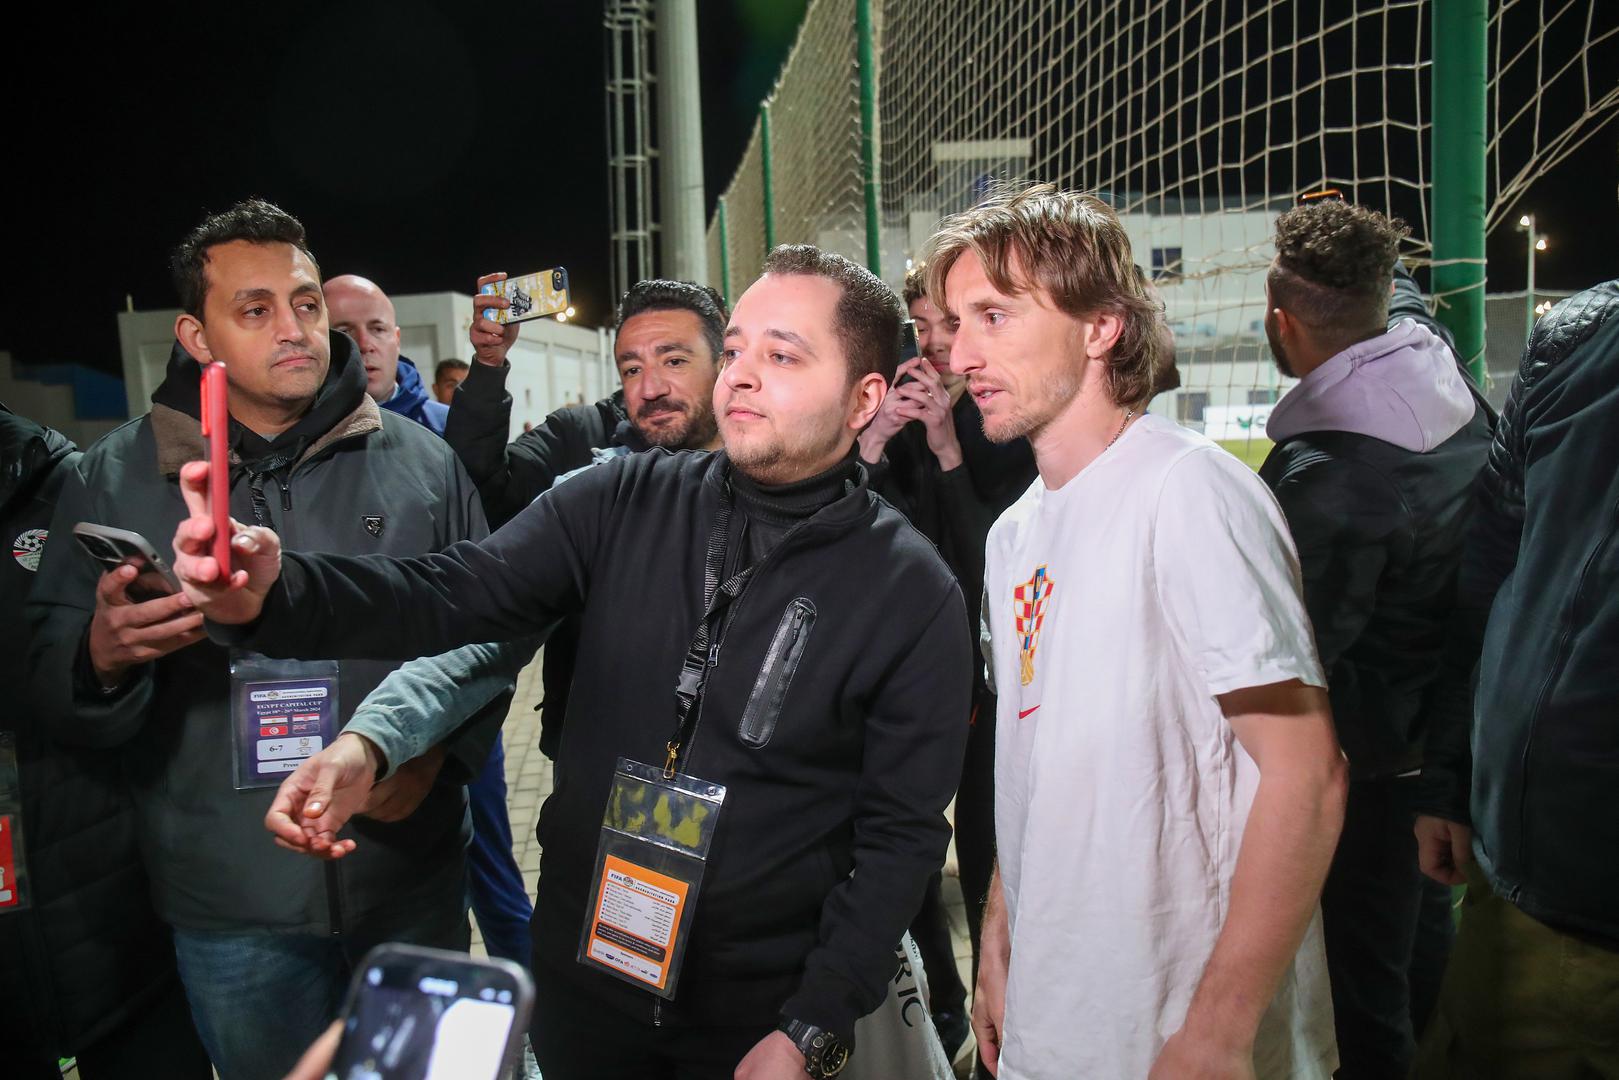 Hrvatski nogometni reprezentativci nalaze se u egipatskom glavnom gradu Kairu gdje će sudjelovati na prijateljskom turniru.